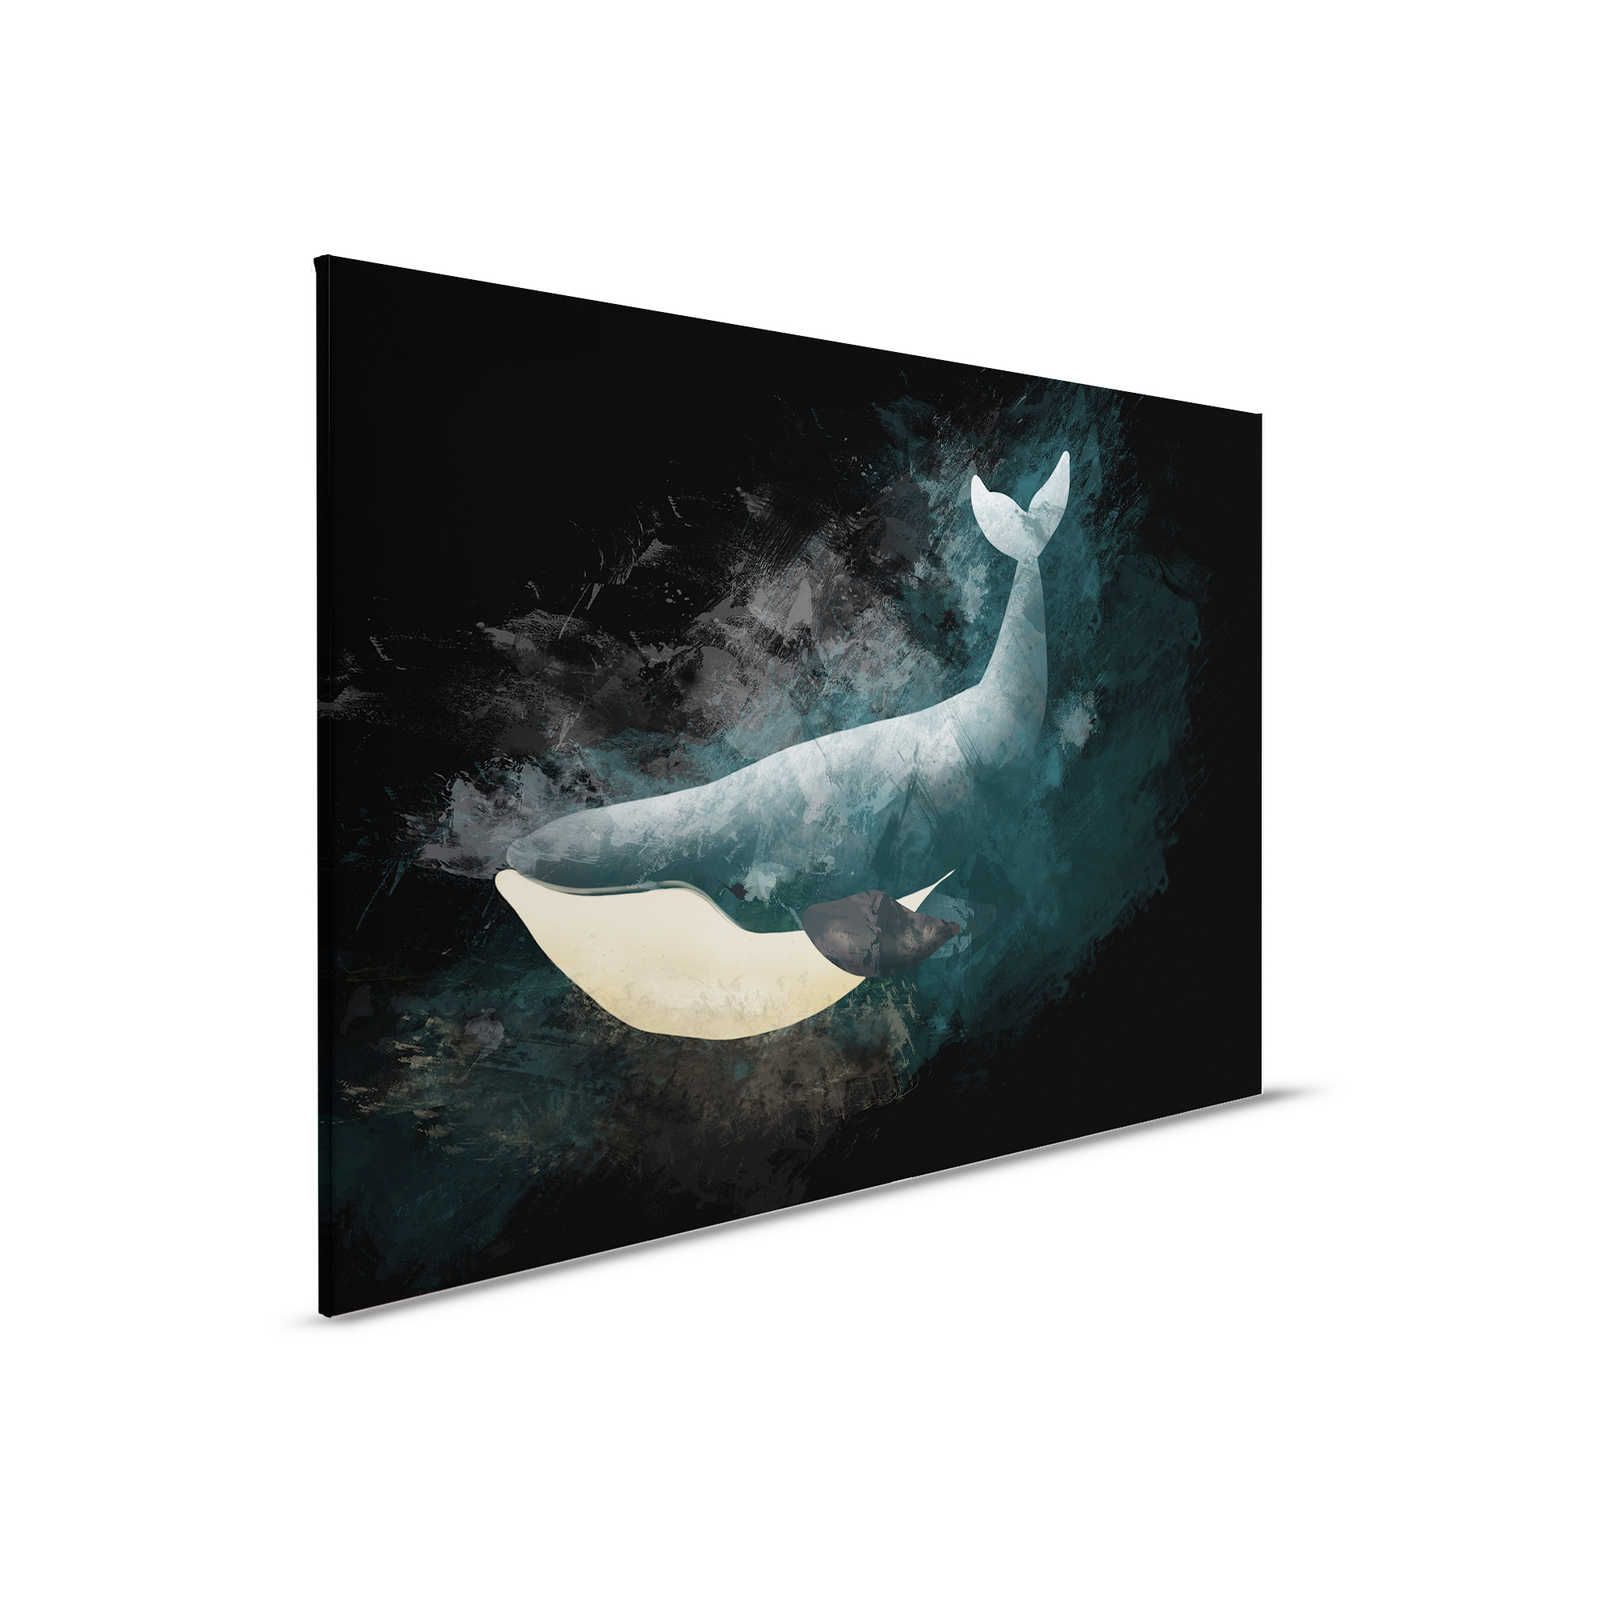 Toile noire avec baleine en dessin - 0,90 m x 0,60 m
